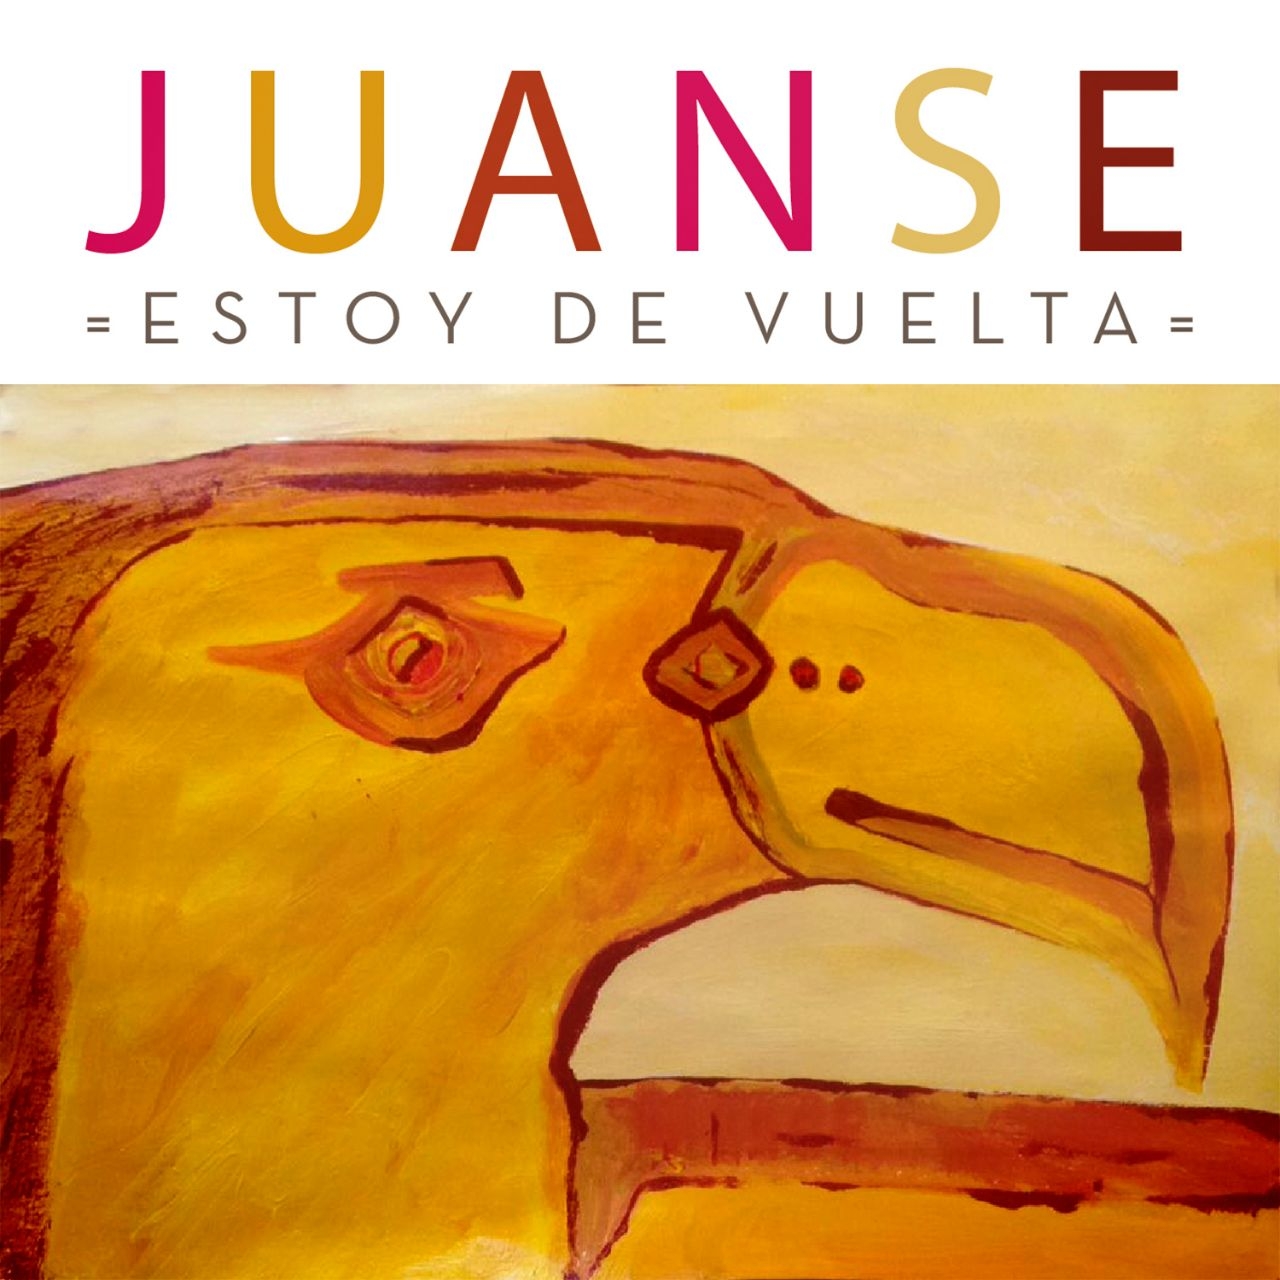 Juanse presenta "Estoy de vuelta", primer single de su nuevo álbum solista!